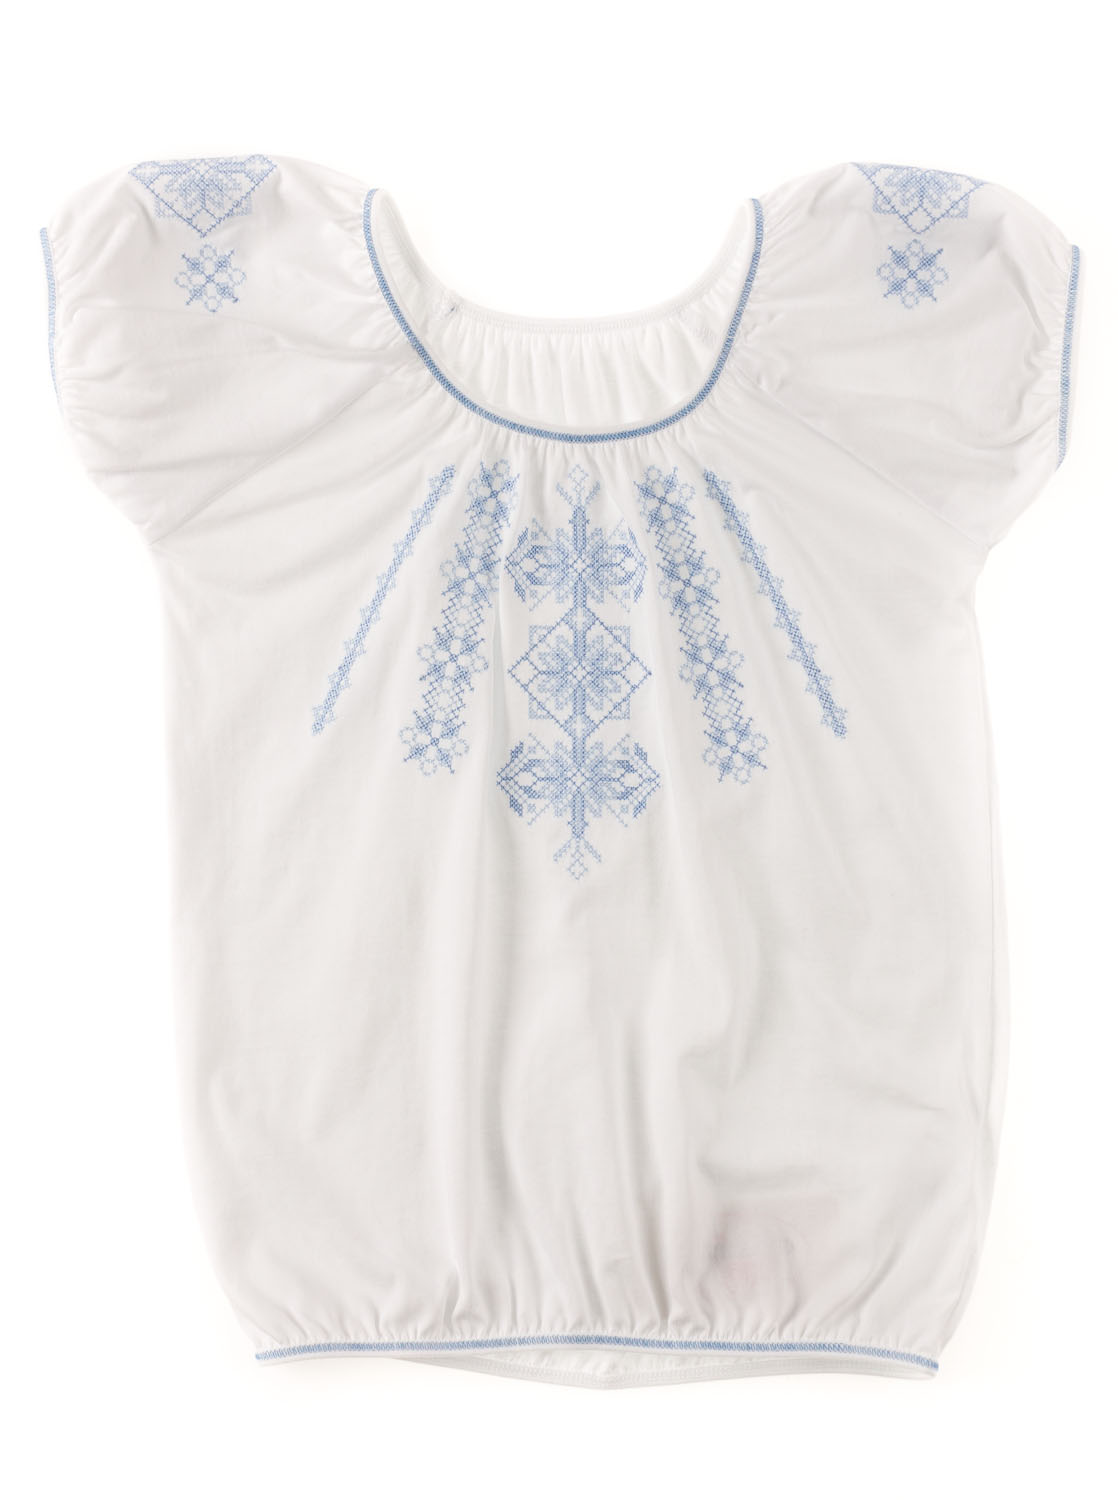 Блузка-вышиванка с коротким рукавом для девочки Фламинго голубая 719-101 - ціна